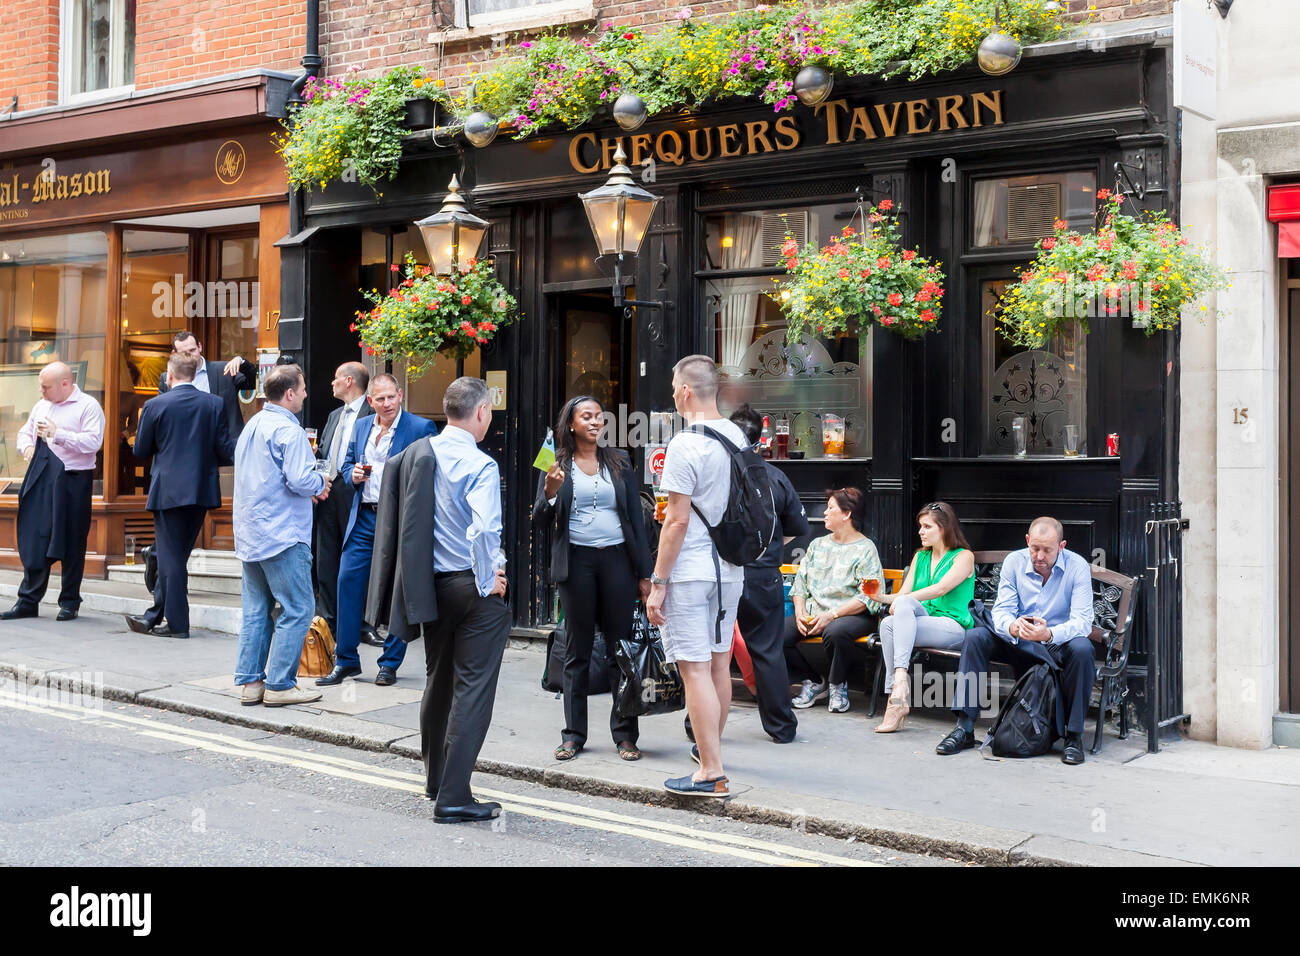 Visiteurs en face d'un pub traditionnel, Londres, Angleterre, Royaume-Uni Banque D'Images